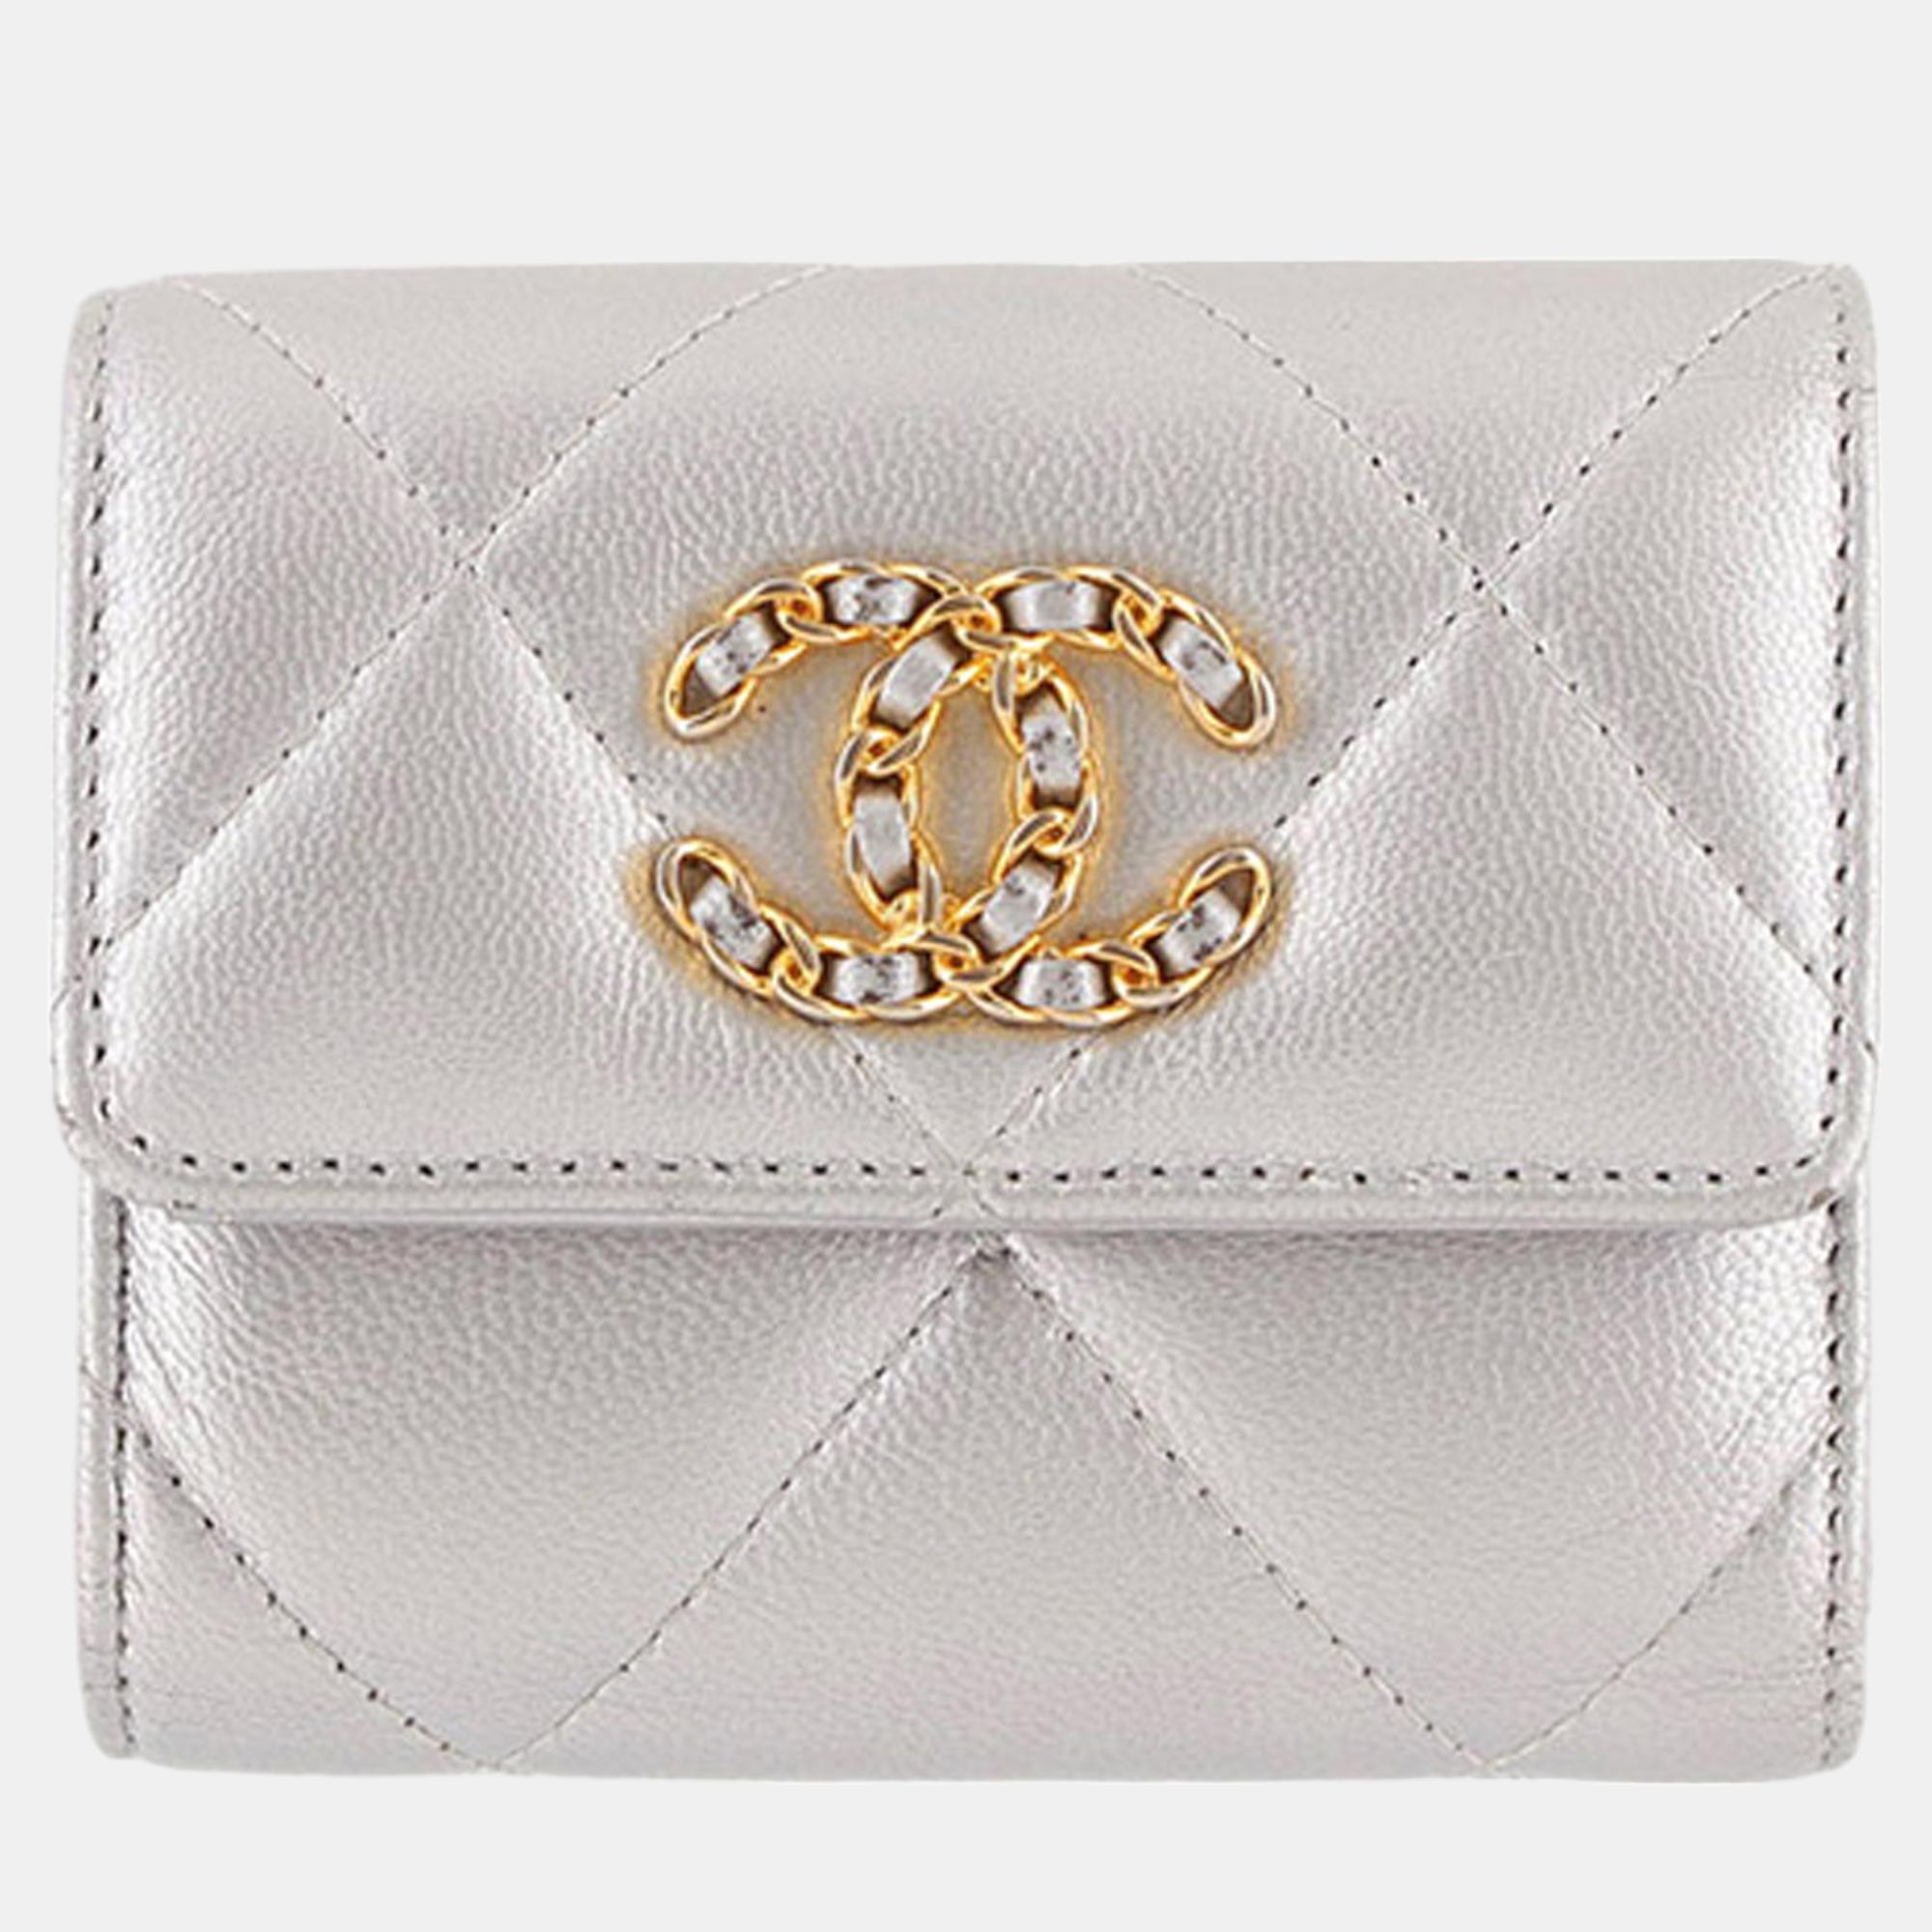 Chanel silver lambskin 19 flap trifold wallet